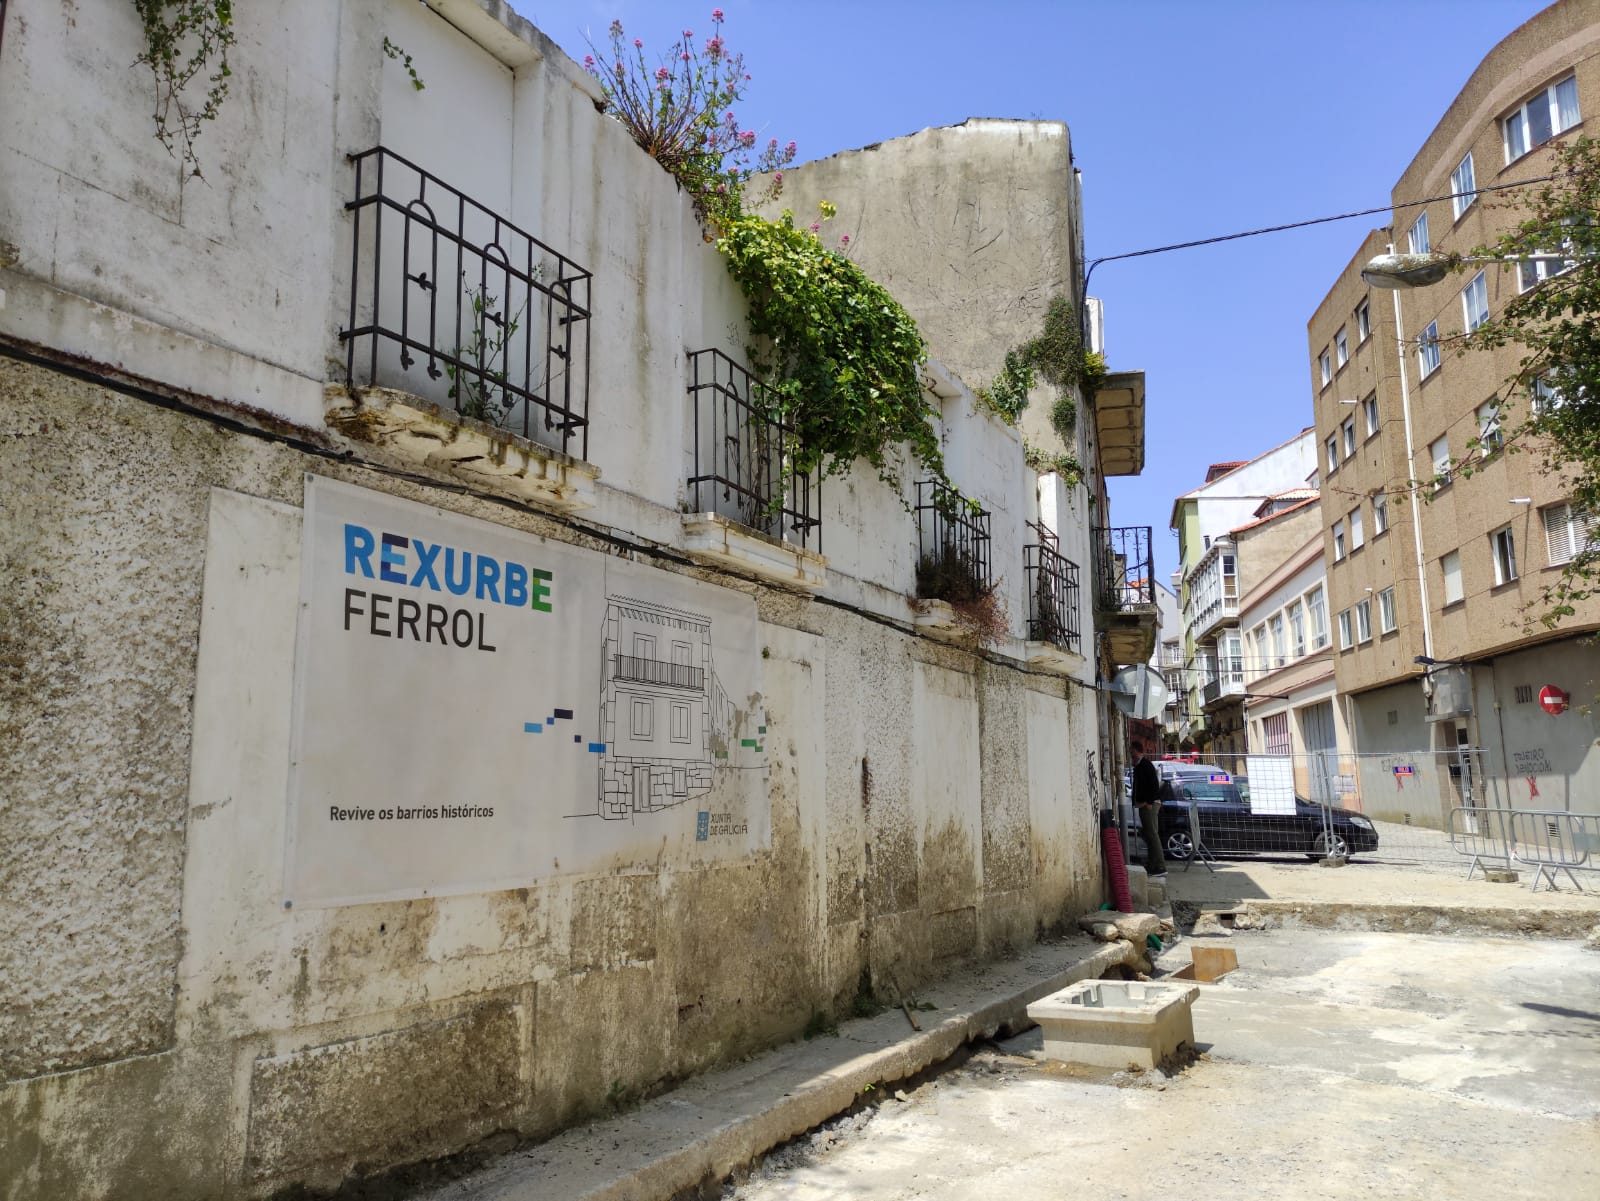 Actualmente hay 18 viviendas incluidas en el plan Rexurbe del barrio de Ferrol Vello